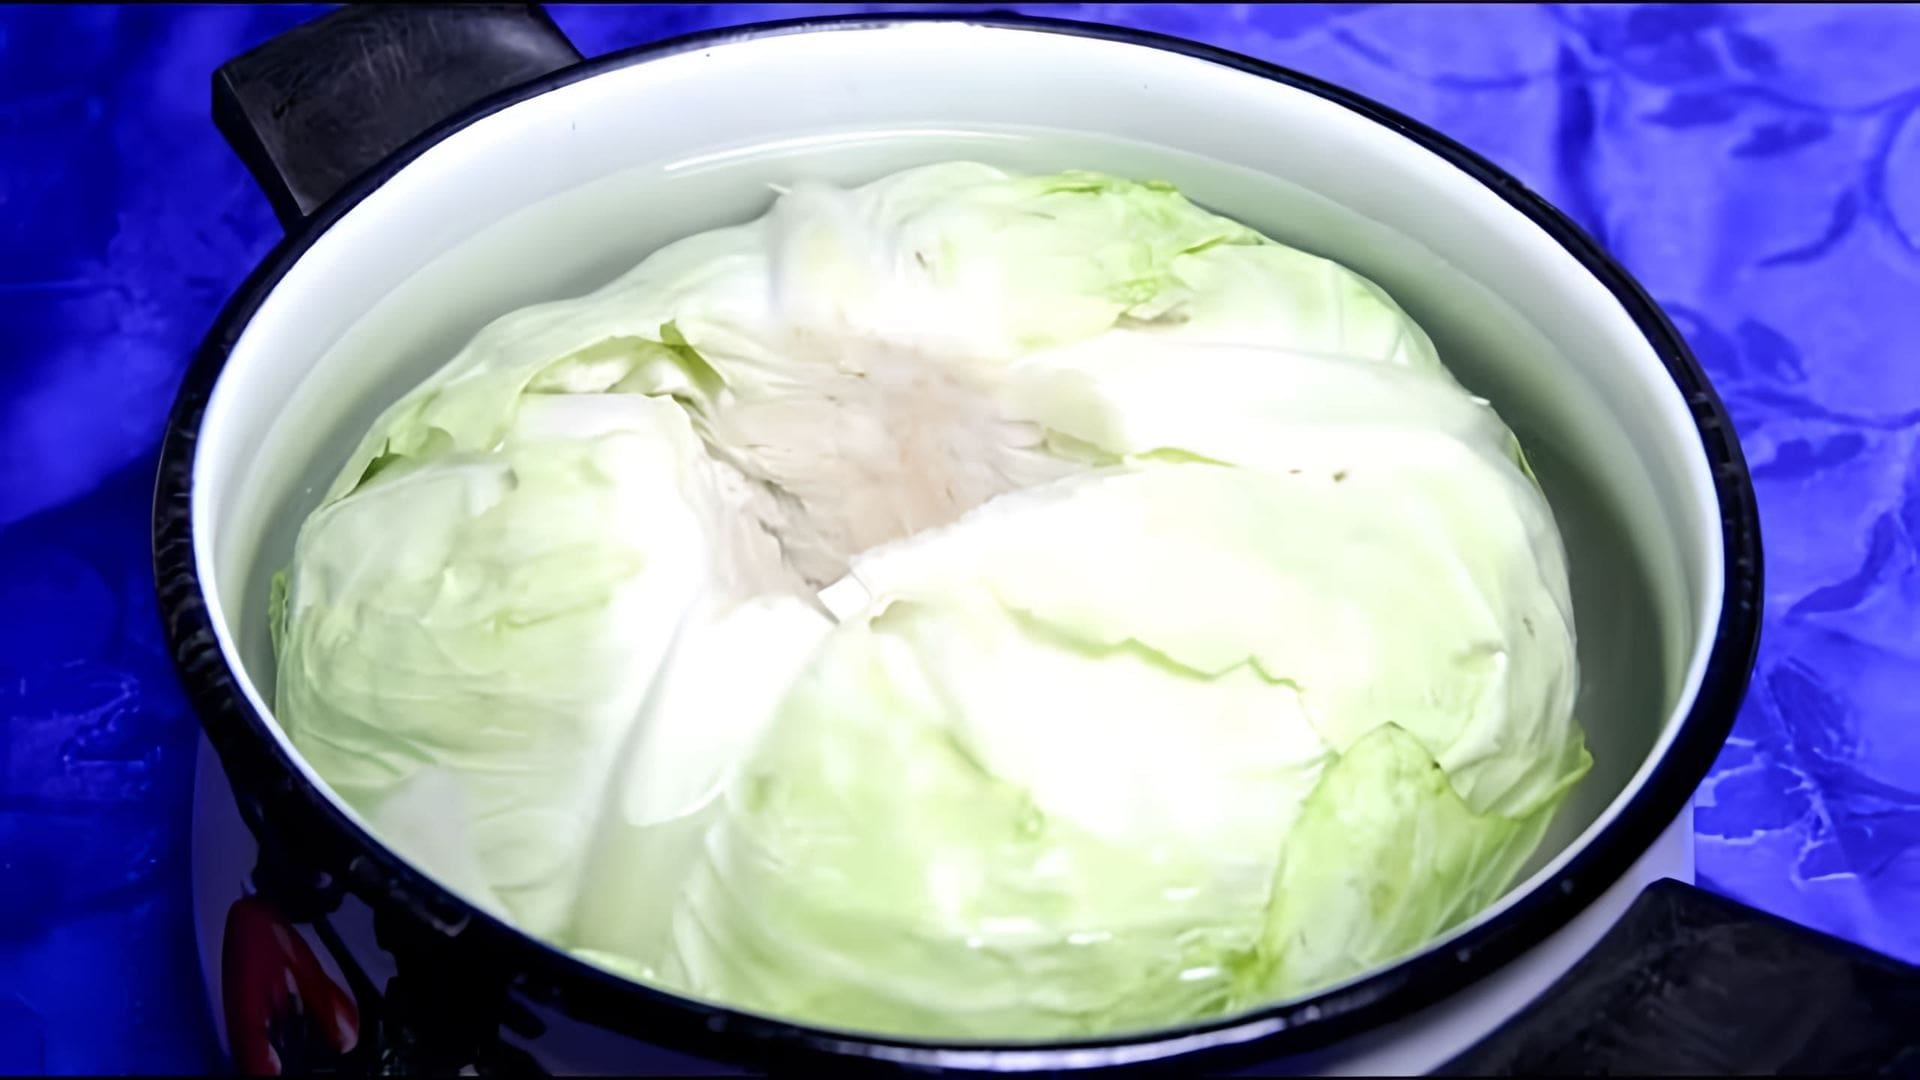 В данном видео демонстрируется процесс приготовления квашеной капусты целиком